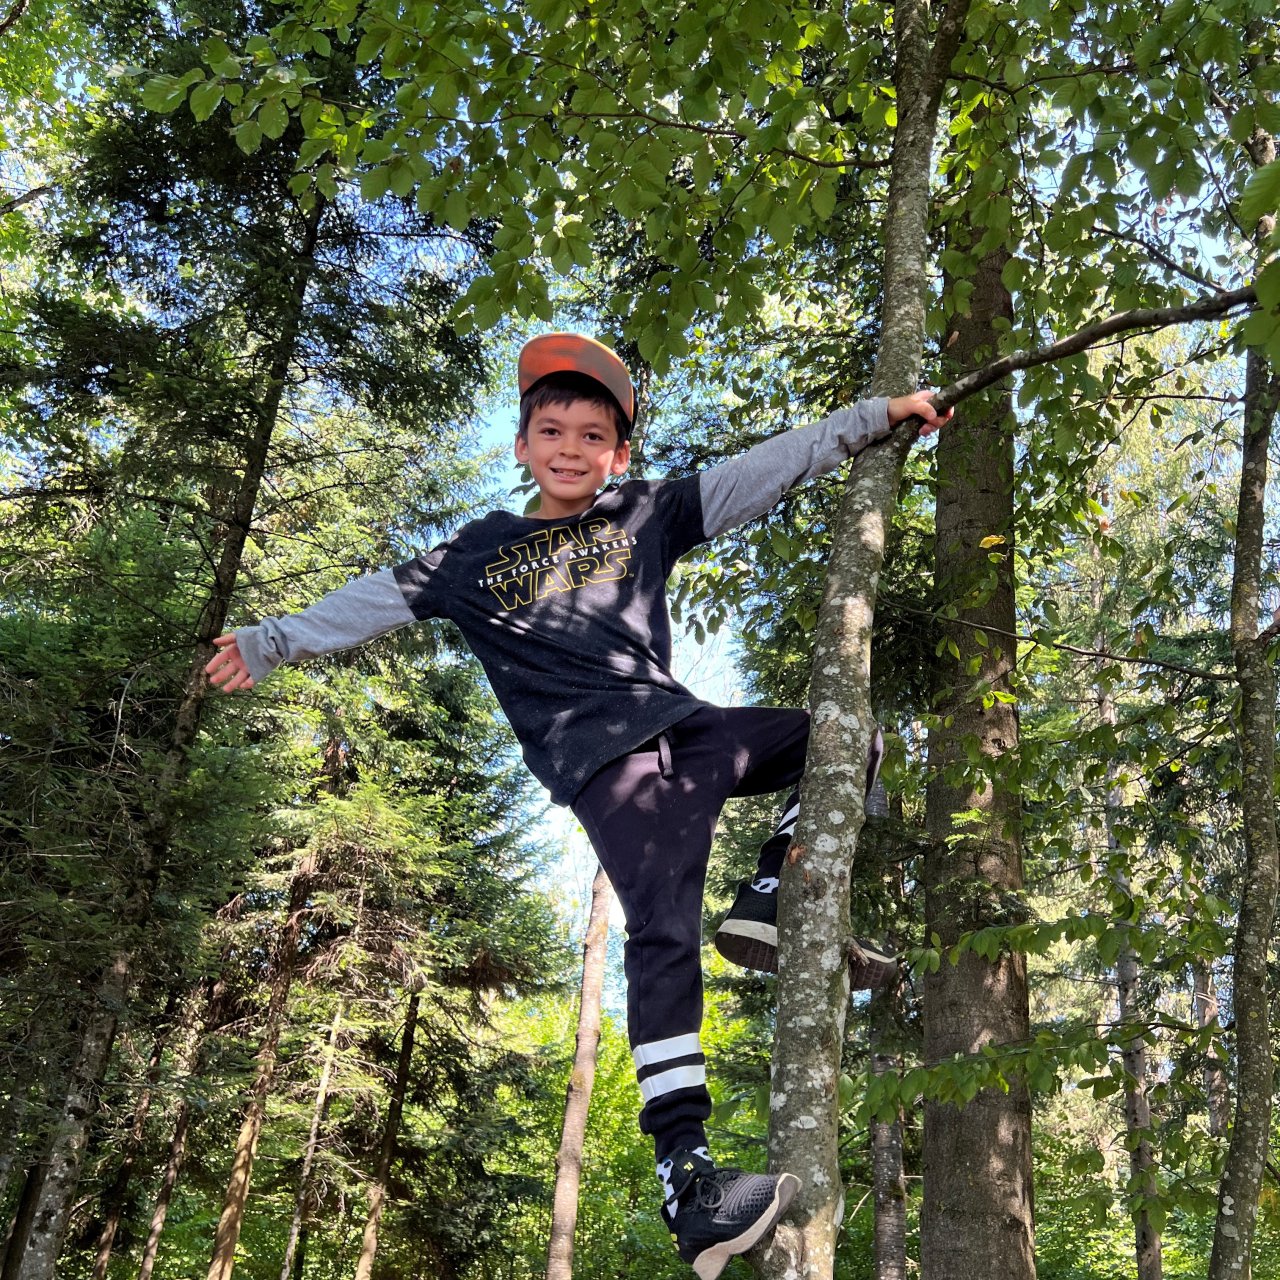 Junge klettert im Wald auf einen Baum und lacht dabei.